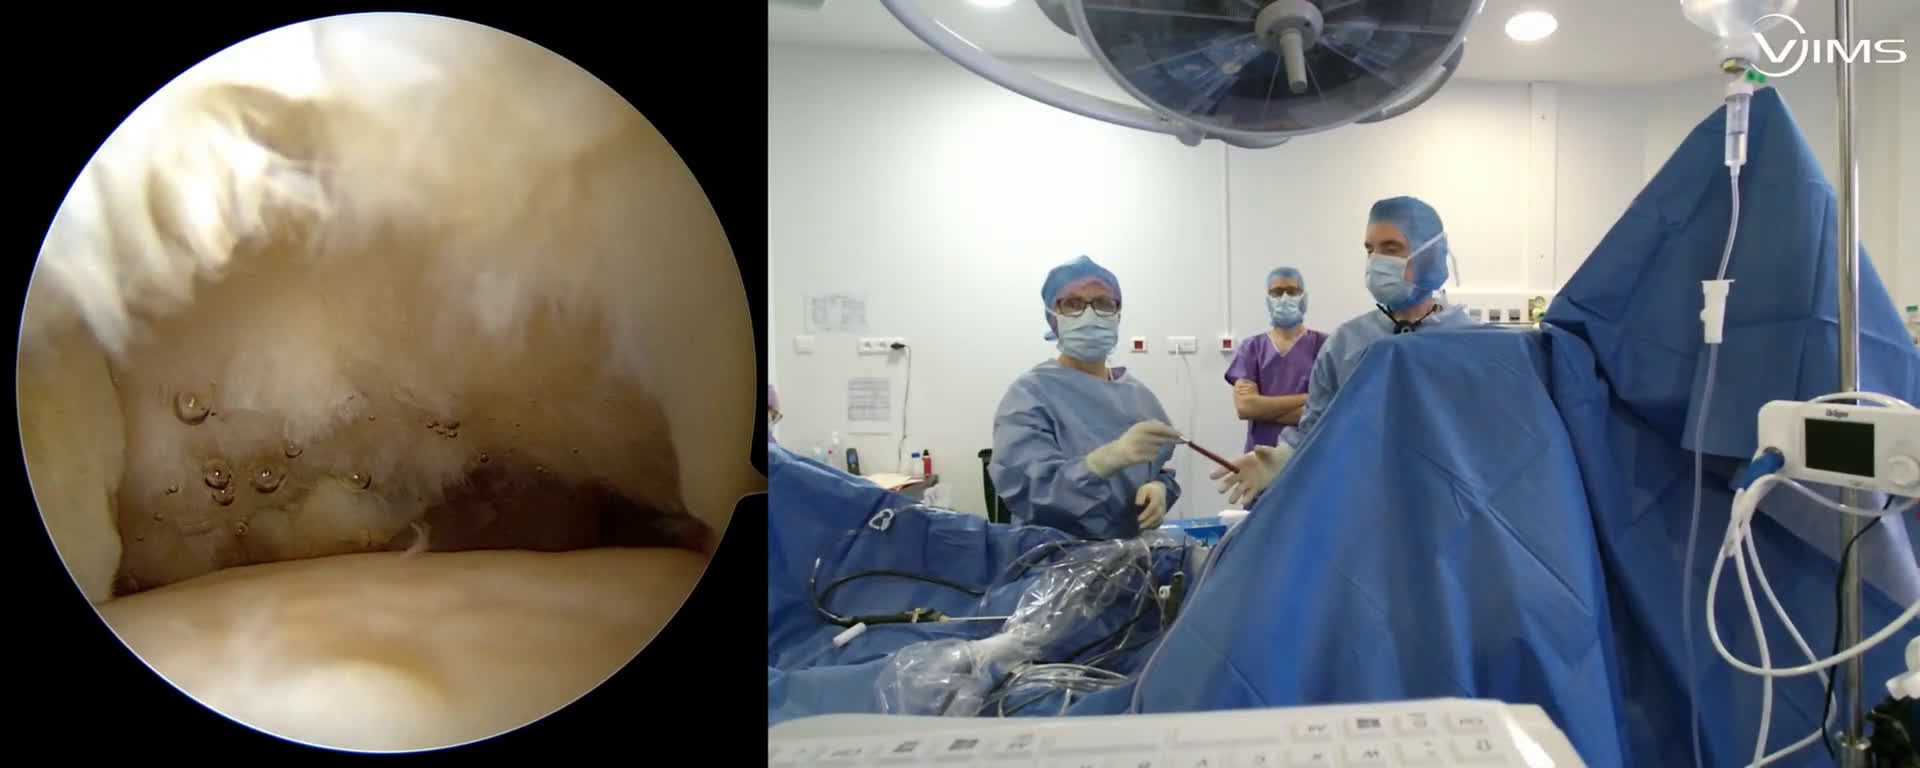 Réparation d'une rupture massive de la coiffe des rotateurs de l’épaule avec le Dr Maxime PELISSIER (Dr. Joudet)